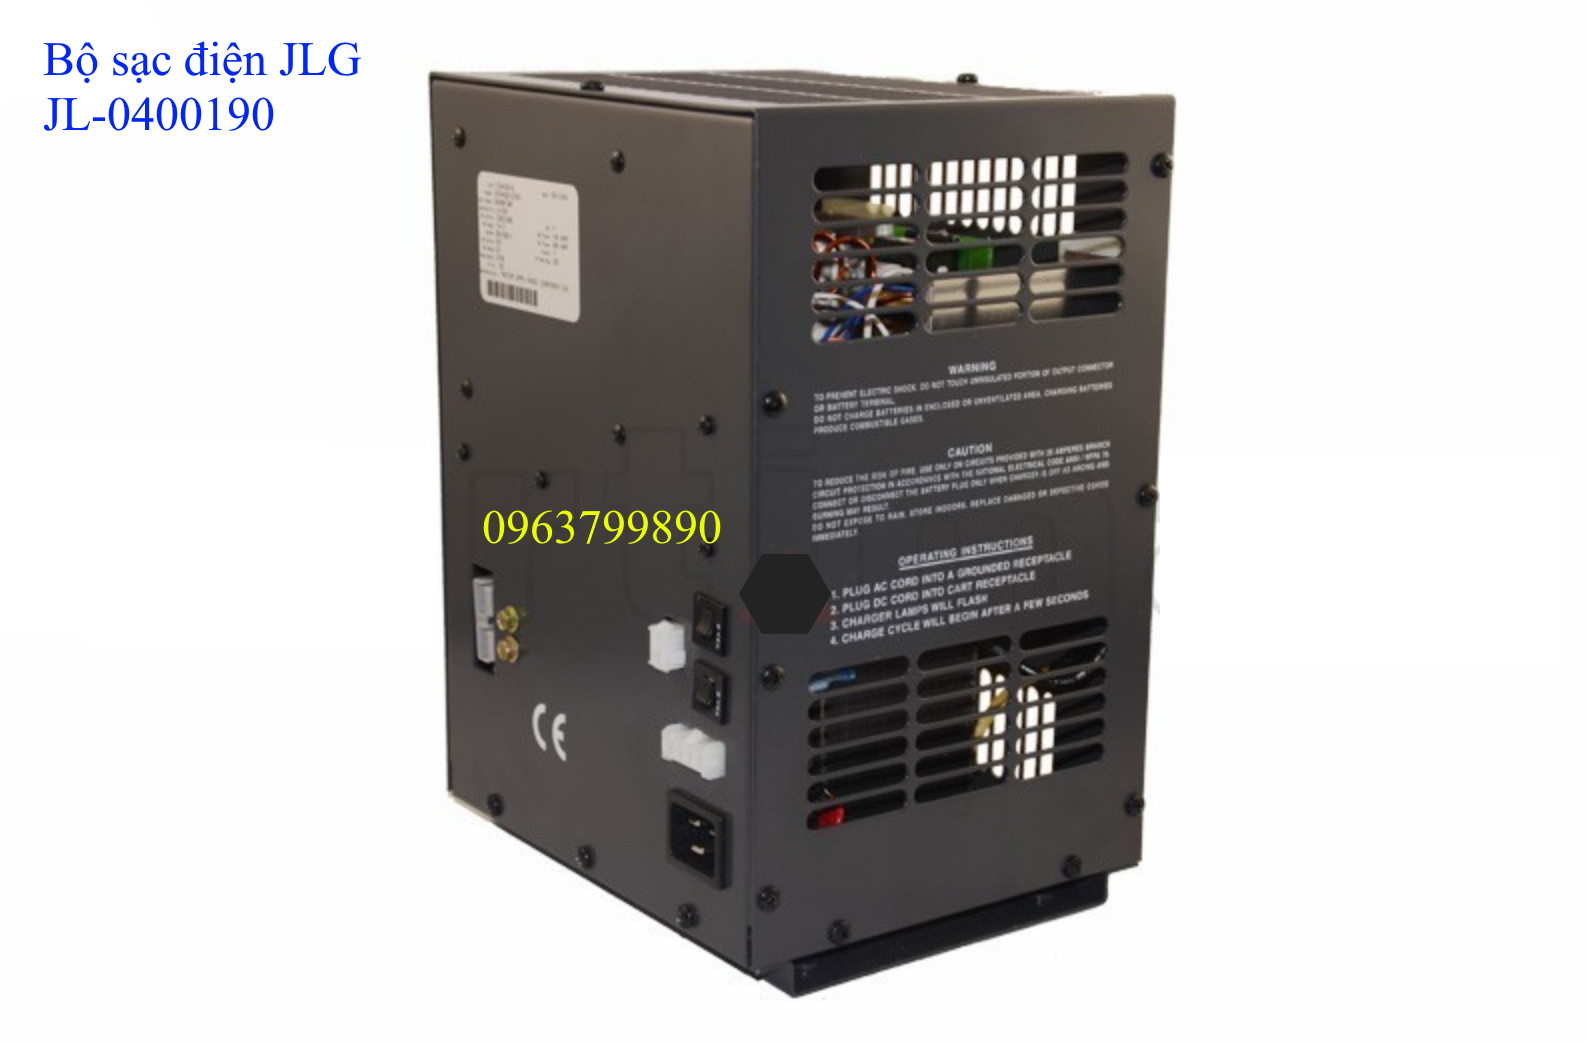 -	JL-0400190 sử dụng sạc điện ắc quy xe nâng người JLG: 3369LE, 4069LE, E300AJP, M600JP